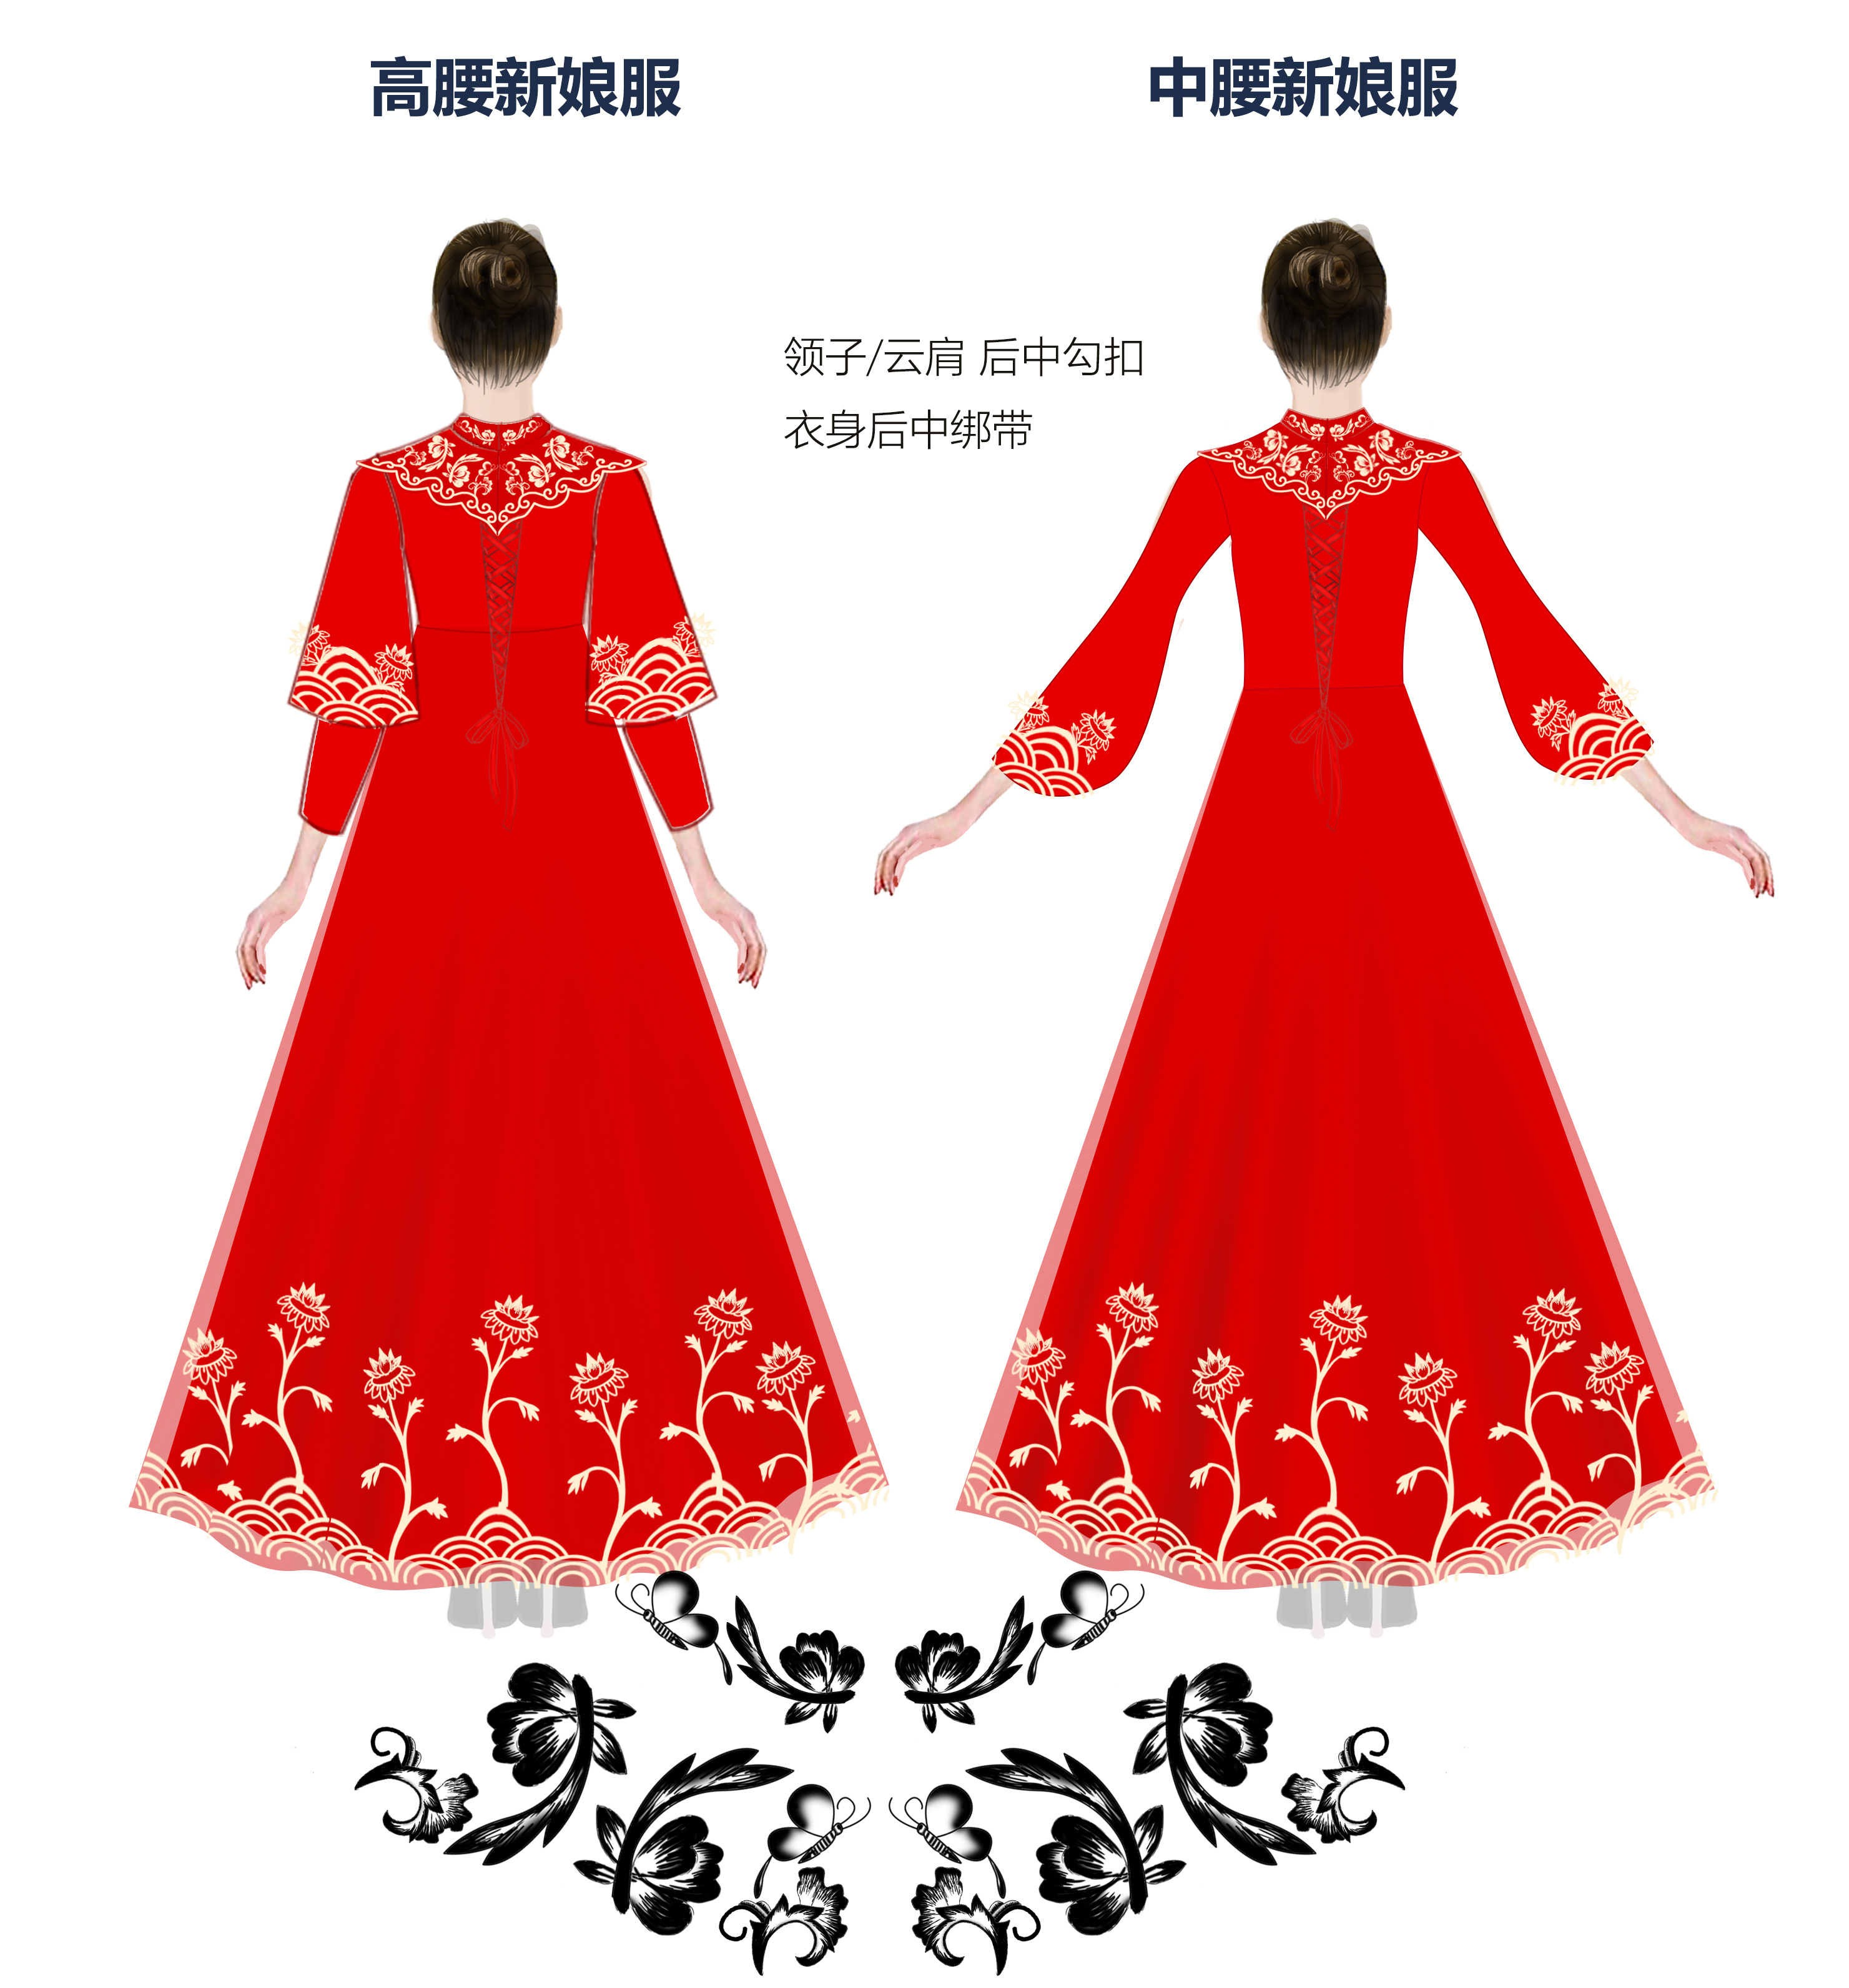 何超莲窦骁的婚礼，中式婚服成功出圈，华夏千年的传承和古典之美 - 哔哩哔哩